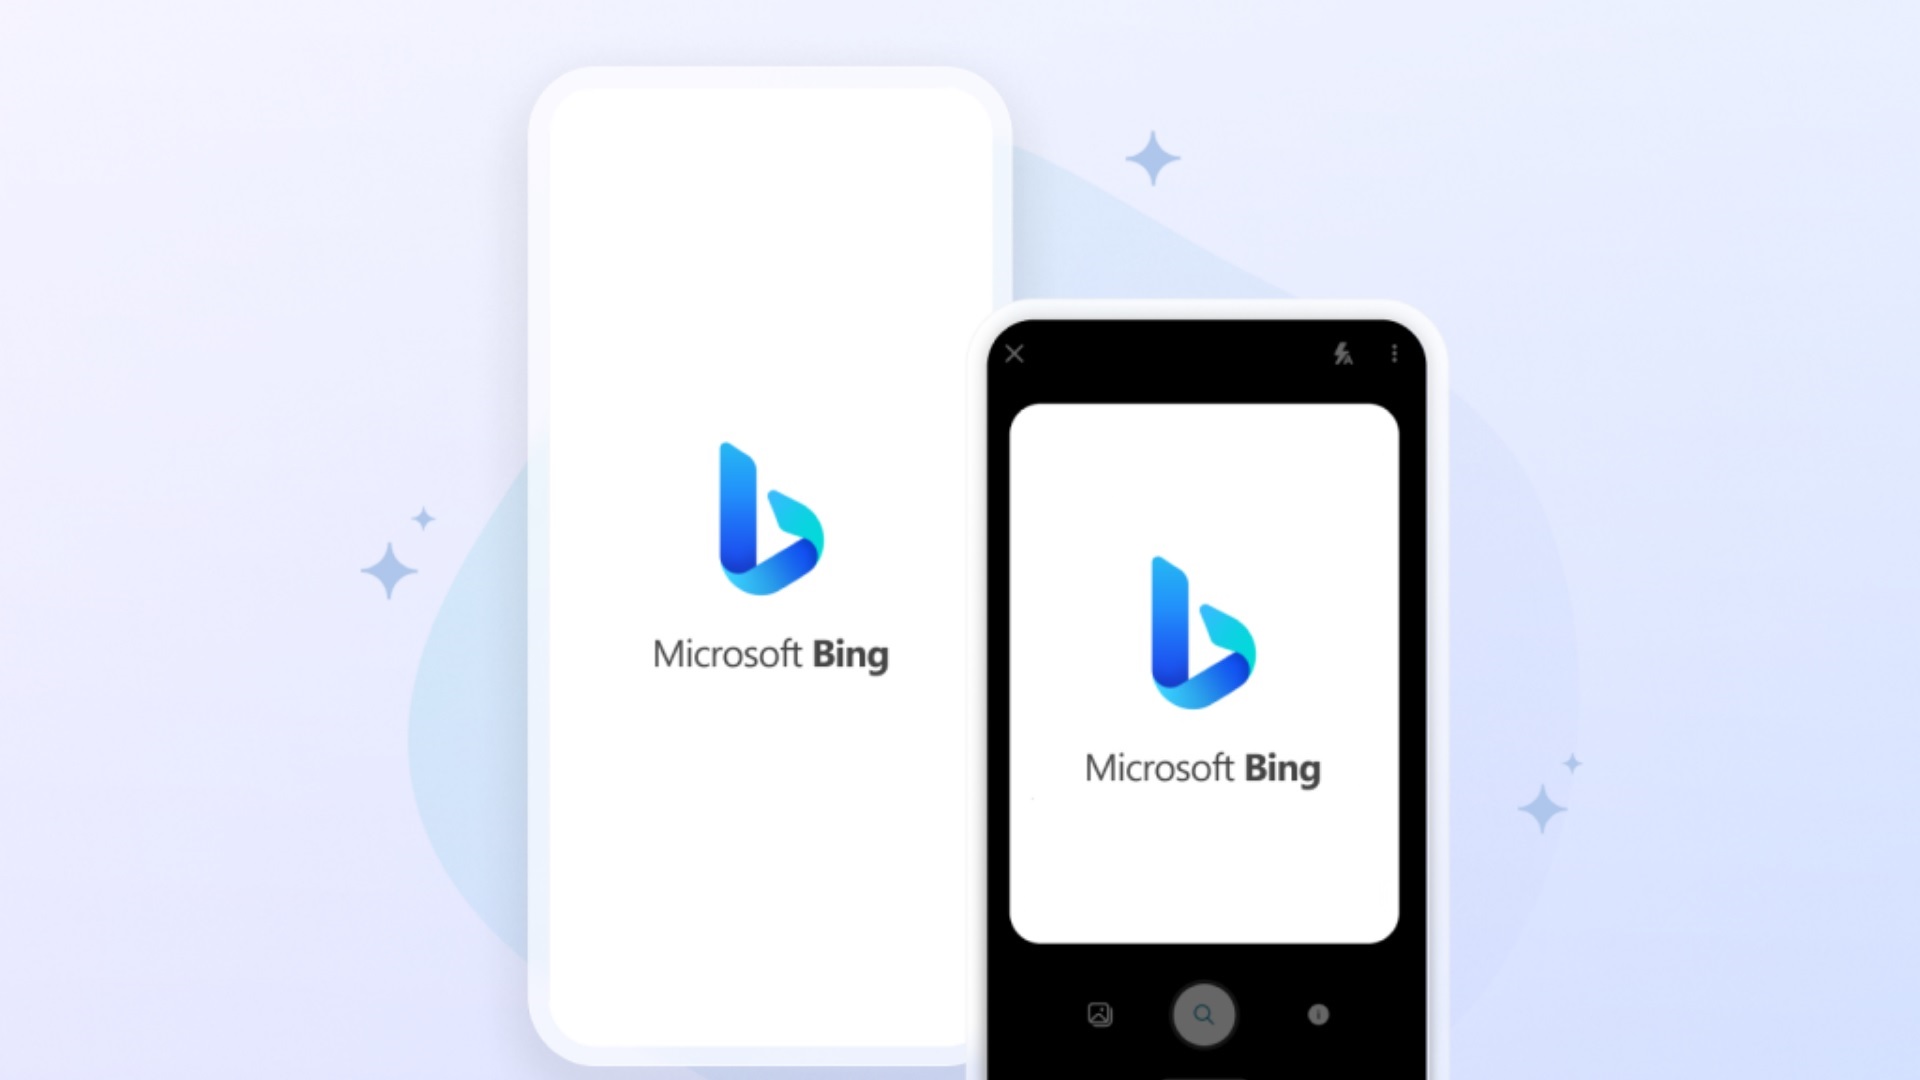 Microsoft wprowadza serię aktualizacji Bing Chat i Edge na urządzeniach mobilnych z ulepszonymi funkcjami podstawowej sztucznej inteligencji.